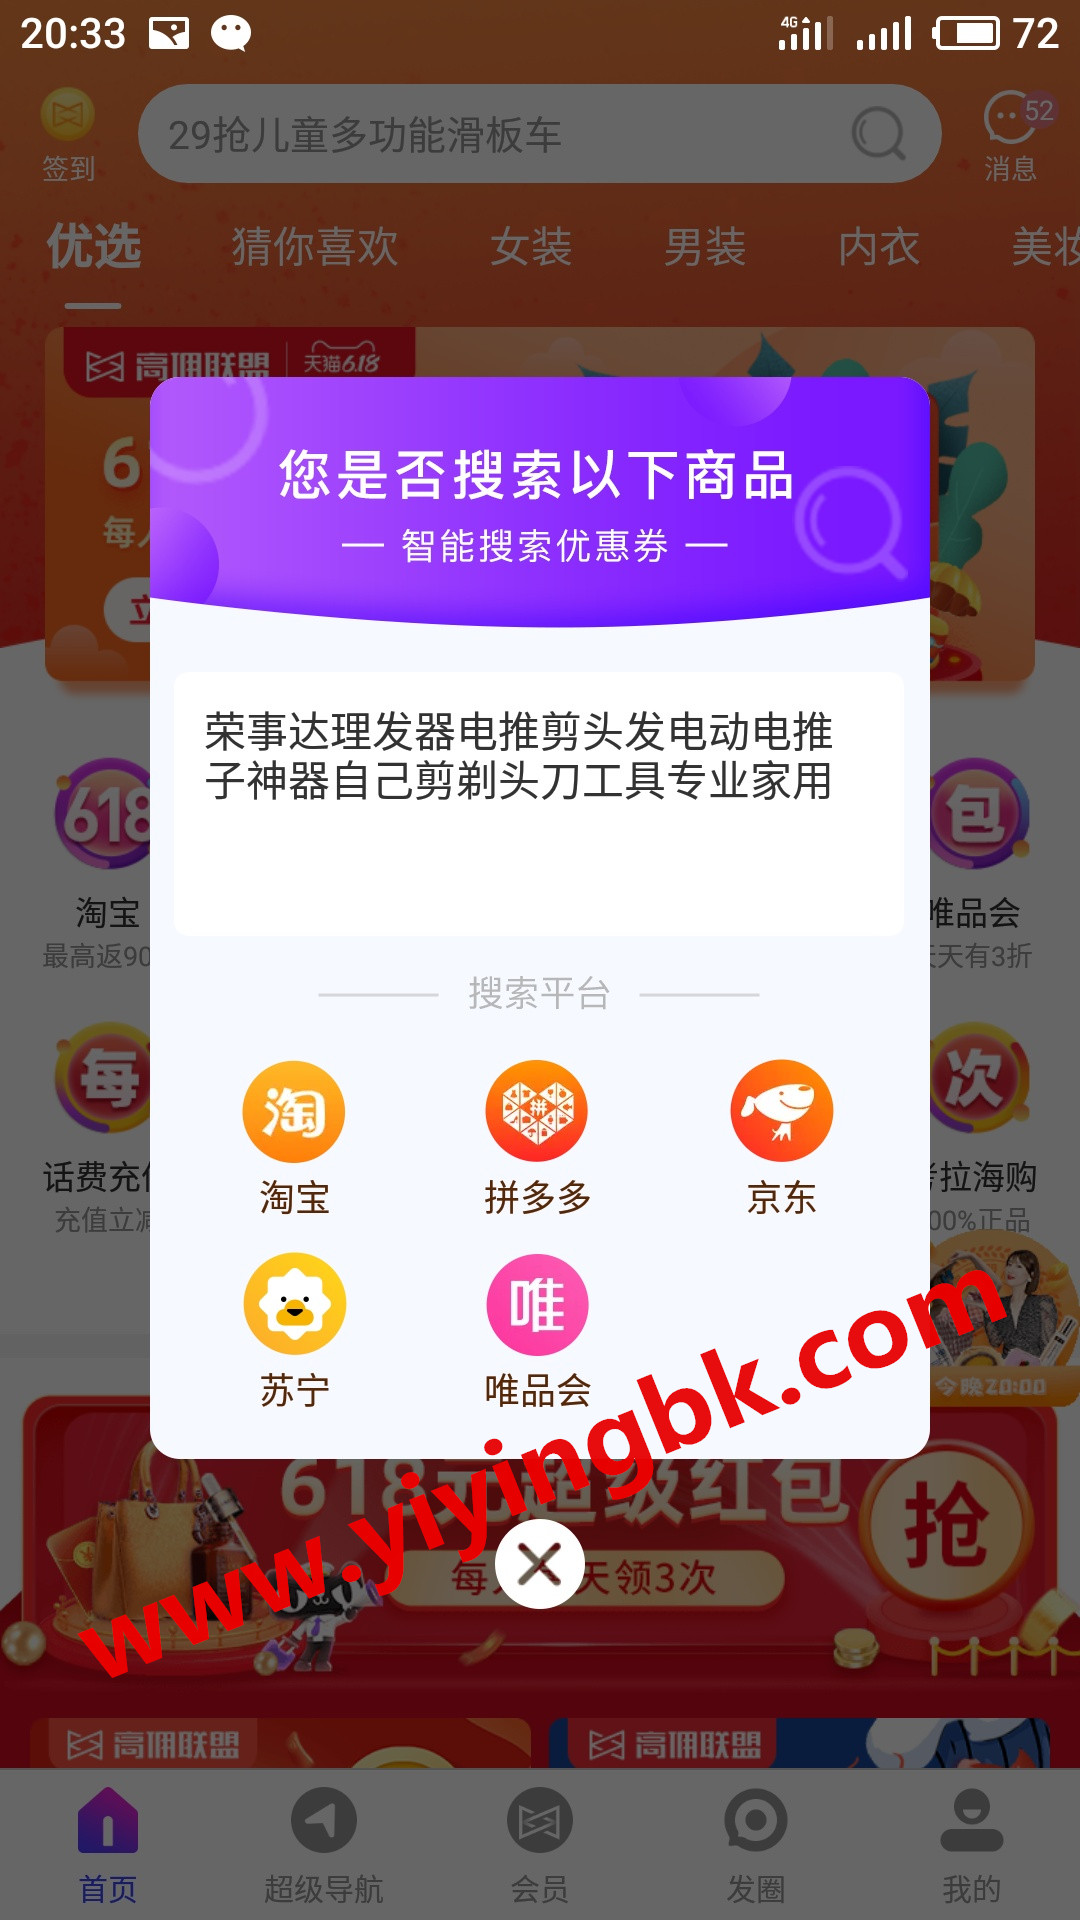 充电理发器电推子购物超级省钱教程，www.yiyingbk.com